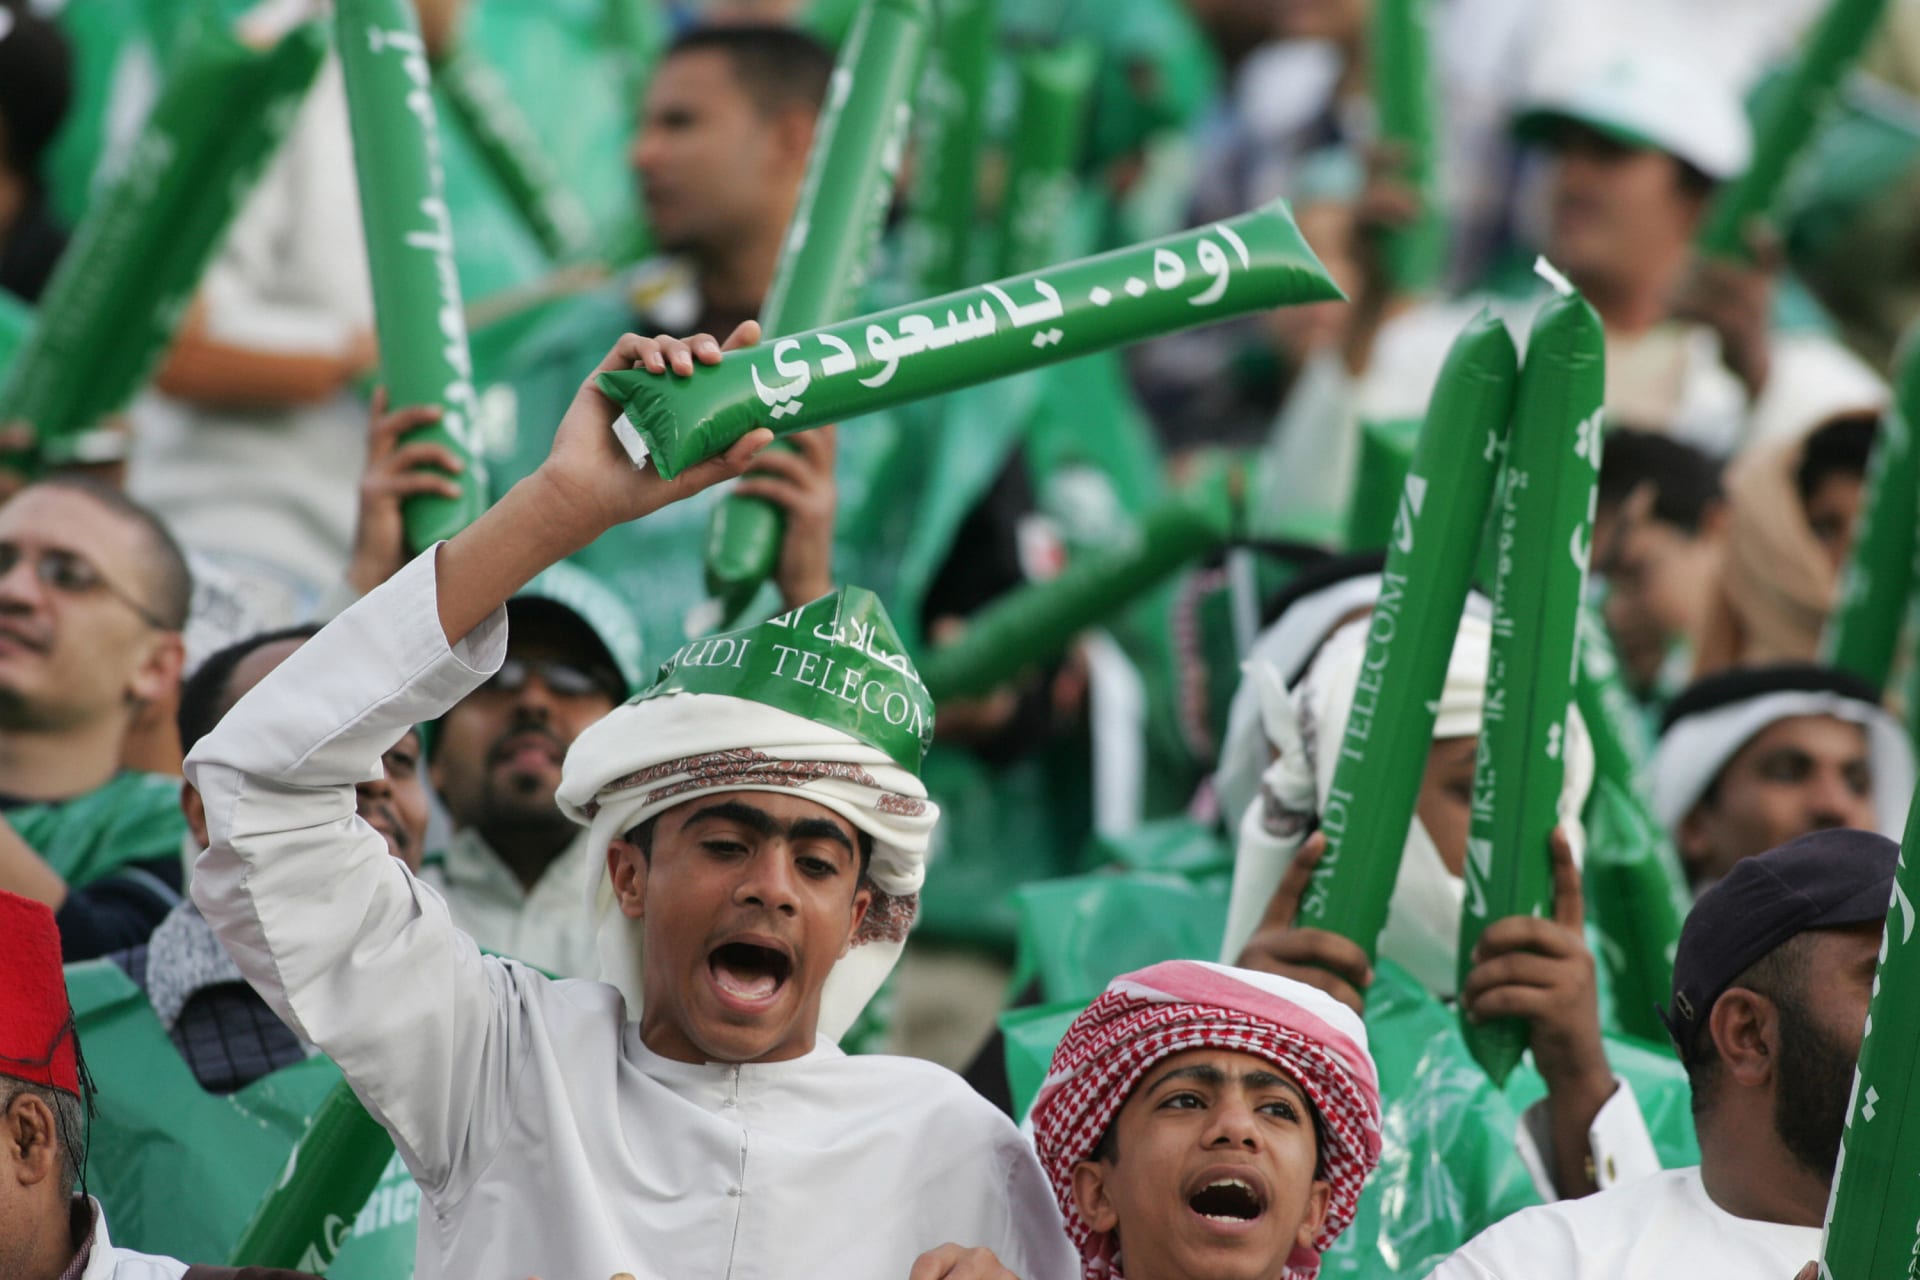 السعودية.. الإعلان عن عودة الجماهير "المحصنين" إلى الملاعب ابتداء من مواجهة المنتخب الفلسطيني